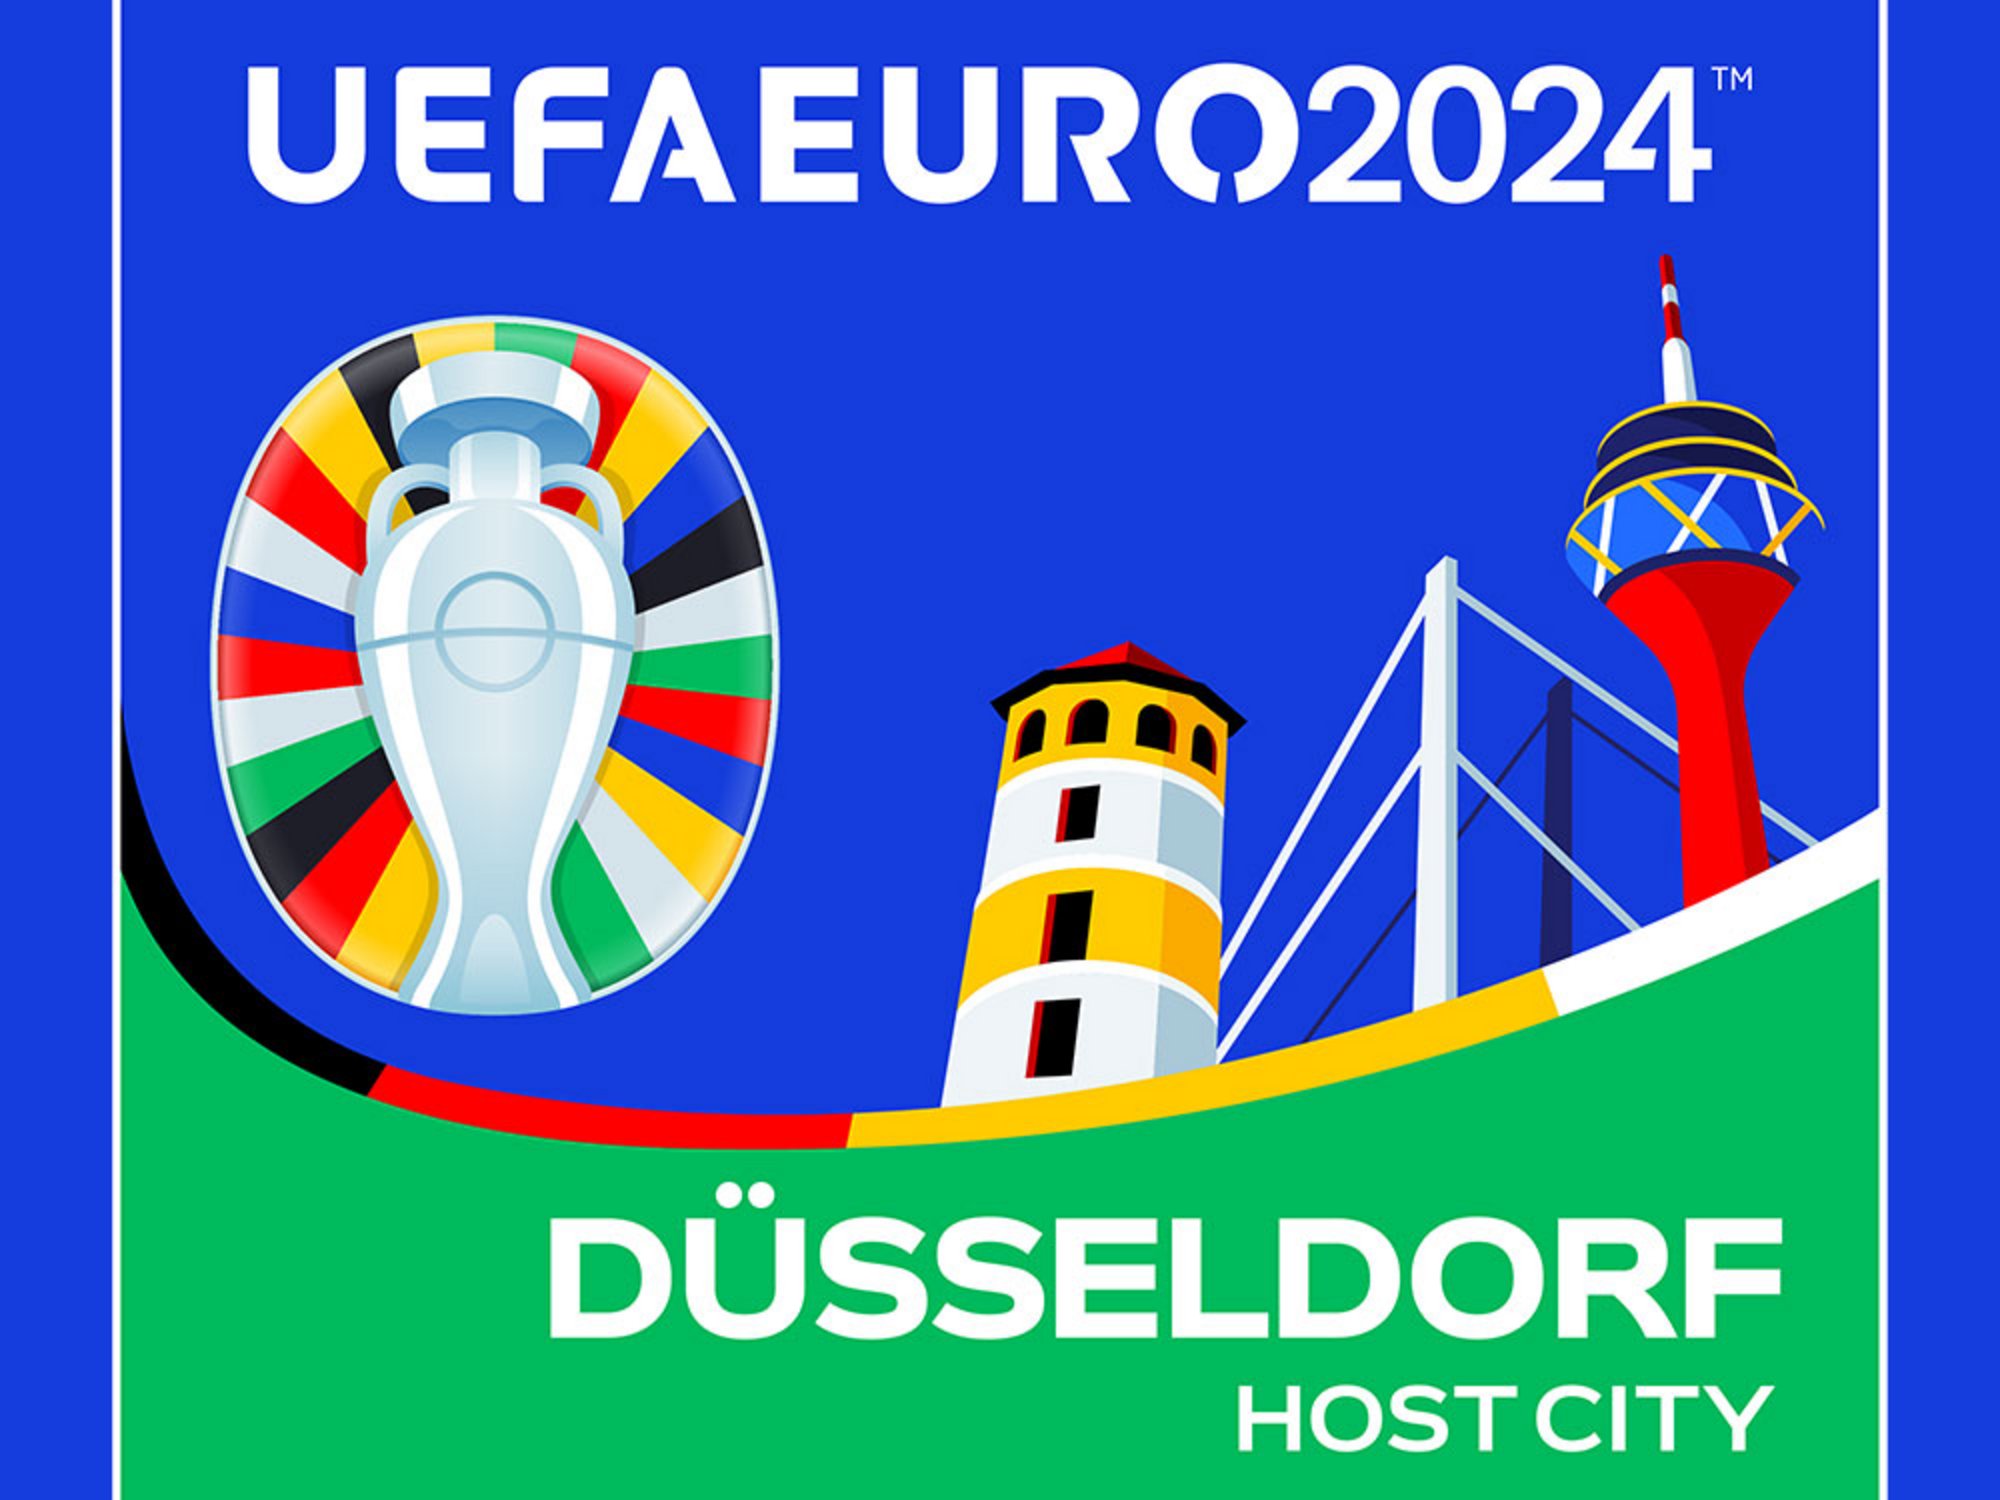 UEFA EURO 2024 Vorrunde, Gruppe E